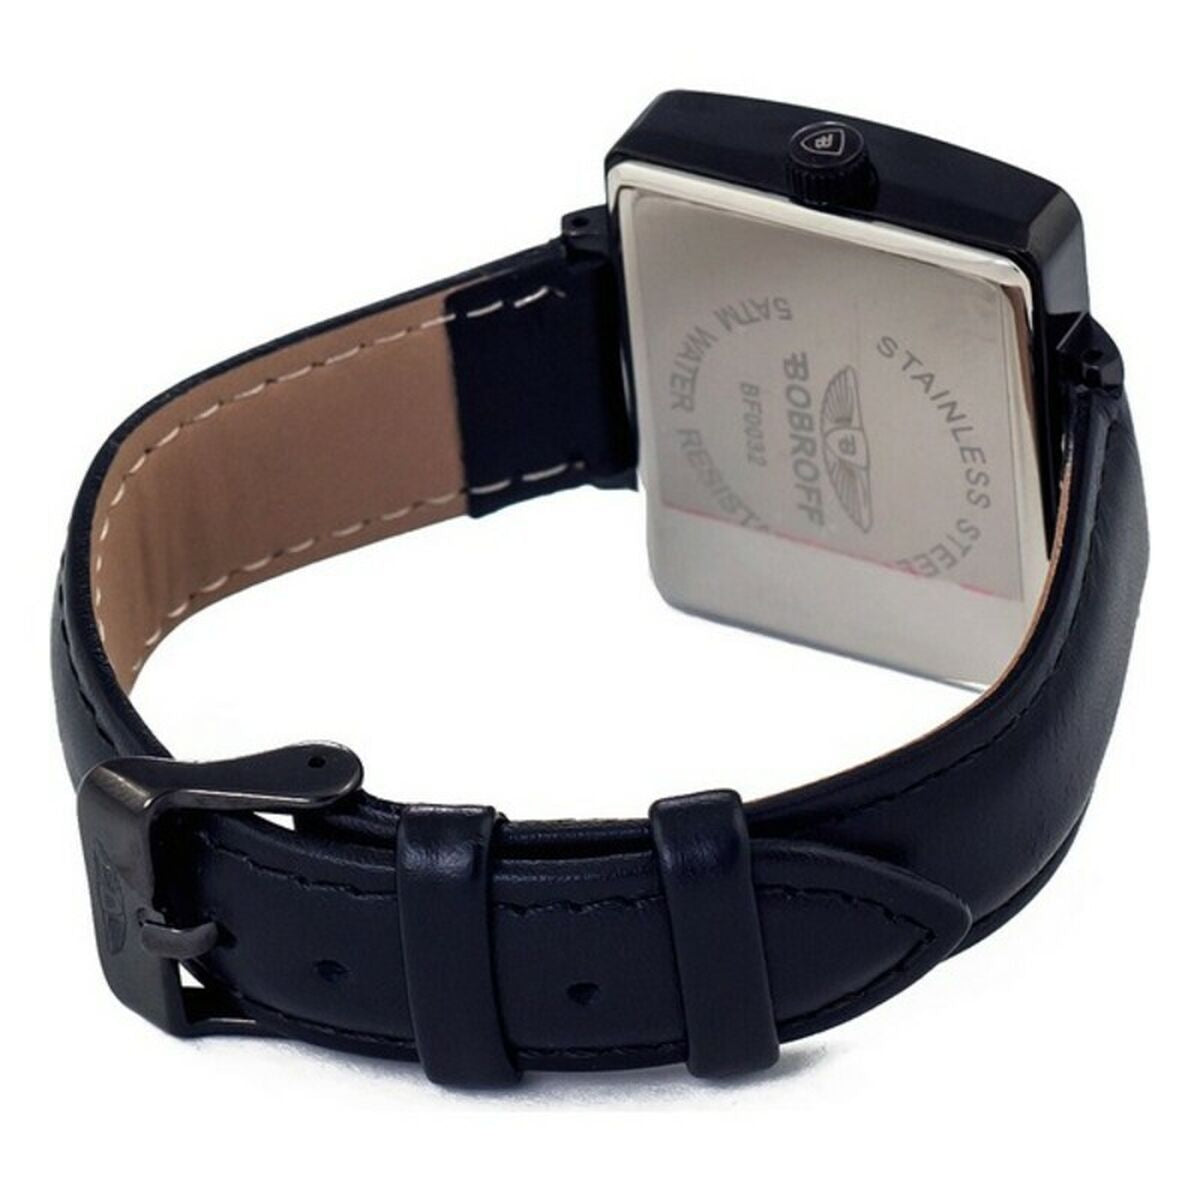 Horloge Dames Bobroff BF0032 (Ø 36 mm)